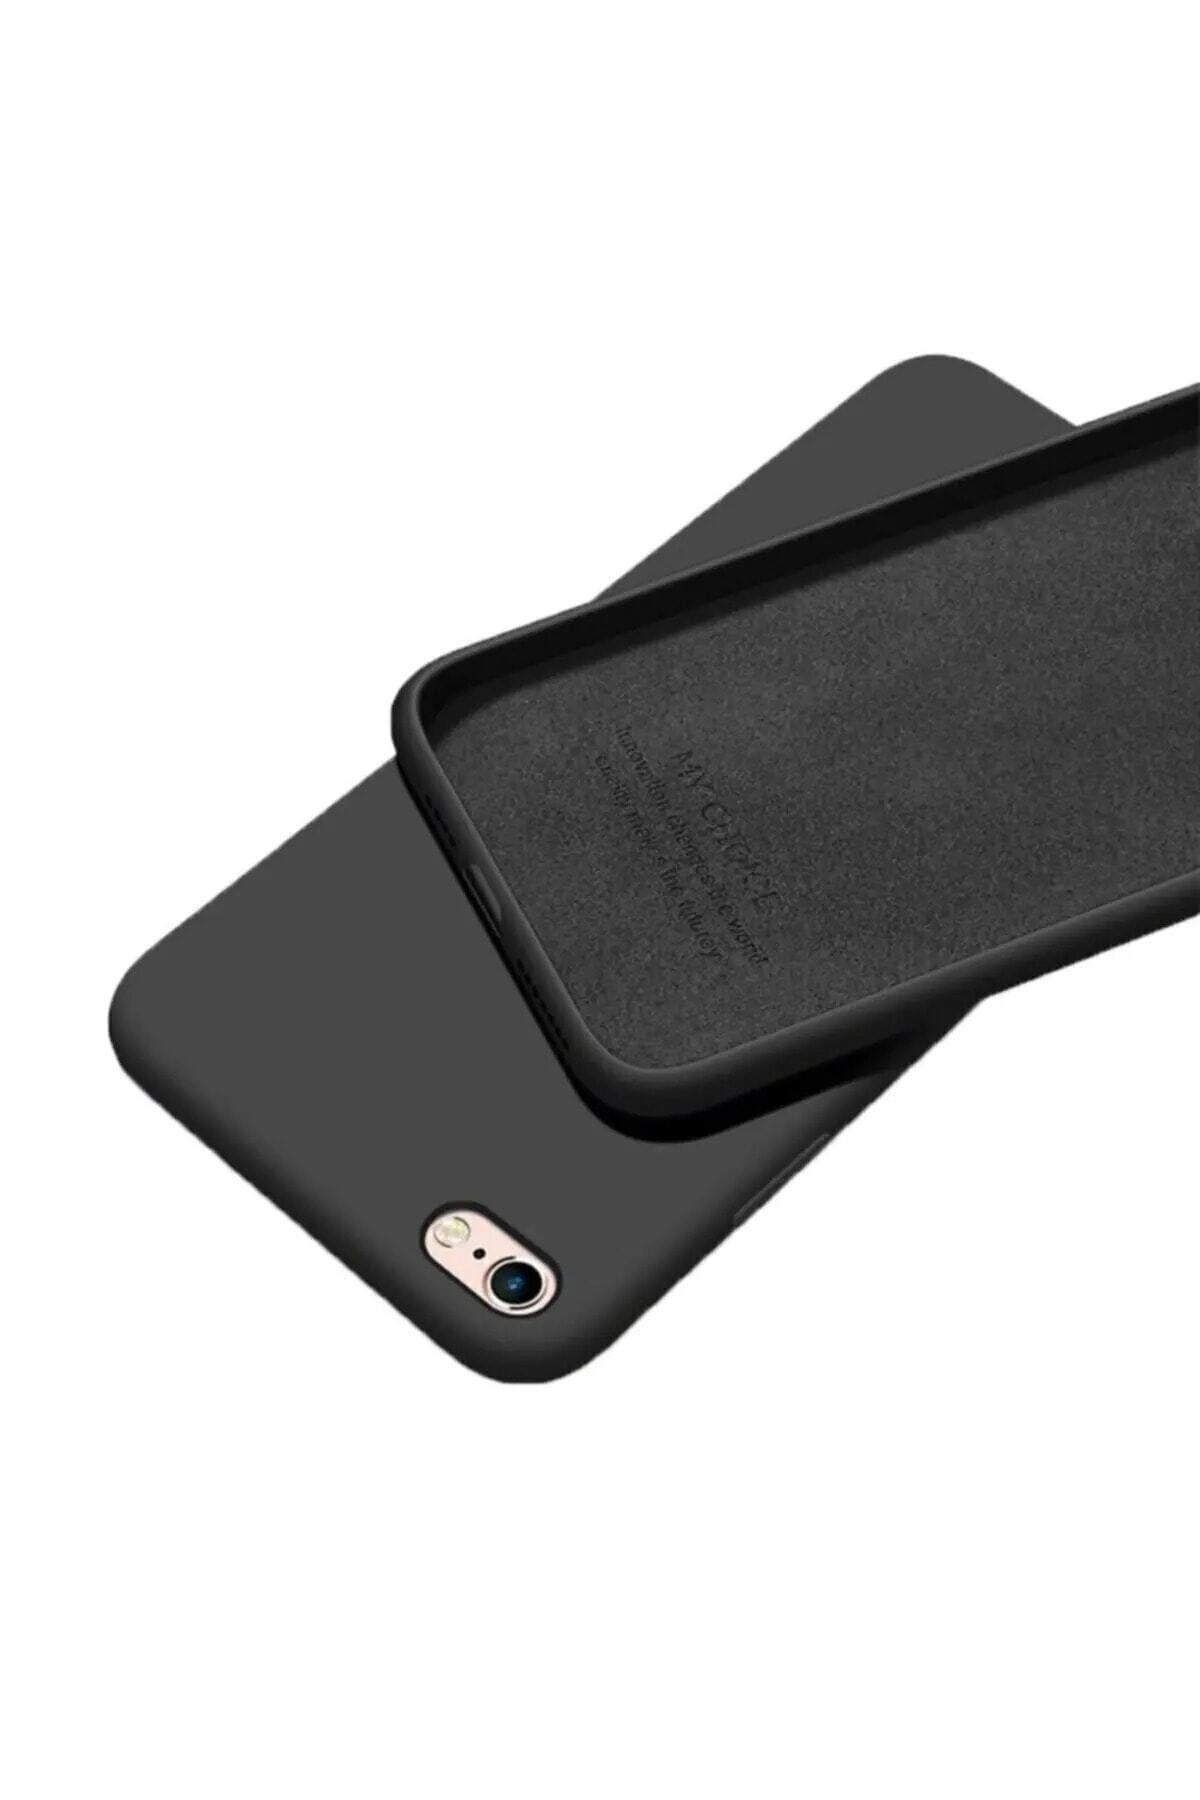 Mopal Iphone 6/6s Plus Için Siyah Içi Kadife Lansman Silikon Kılıf - Molly